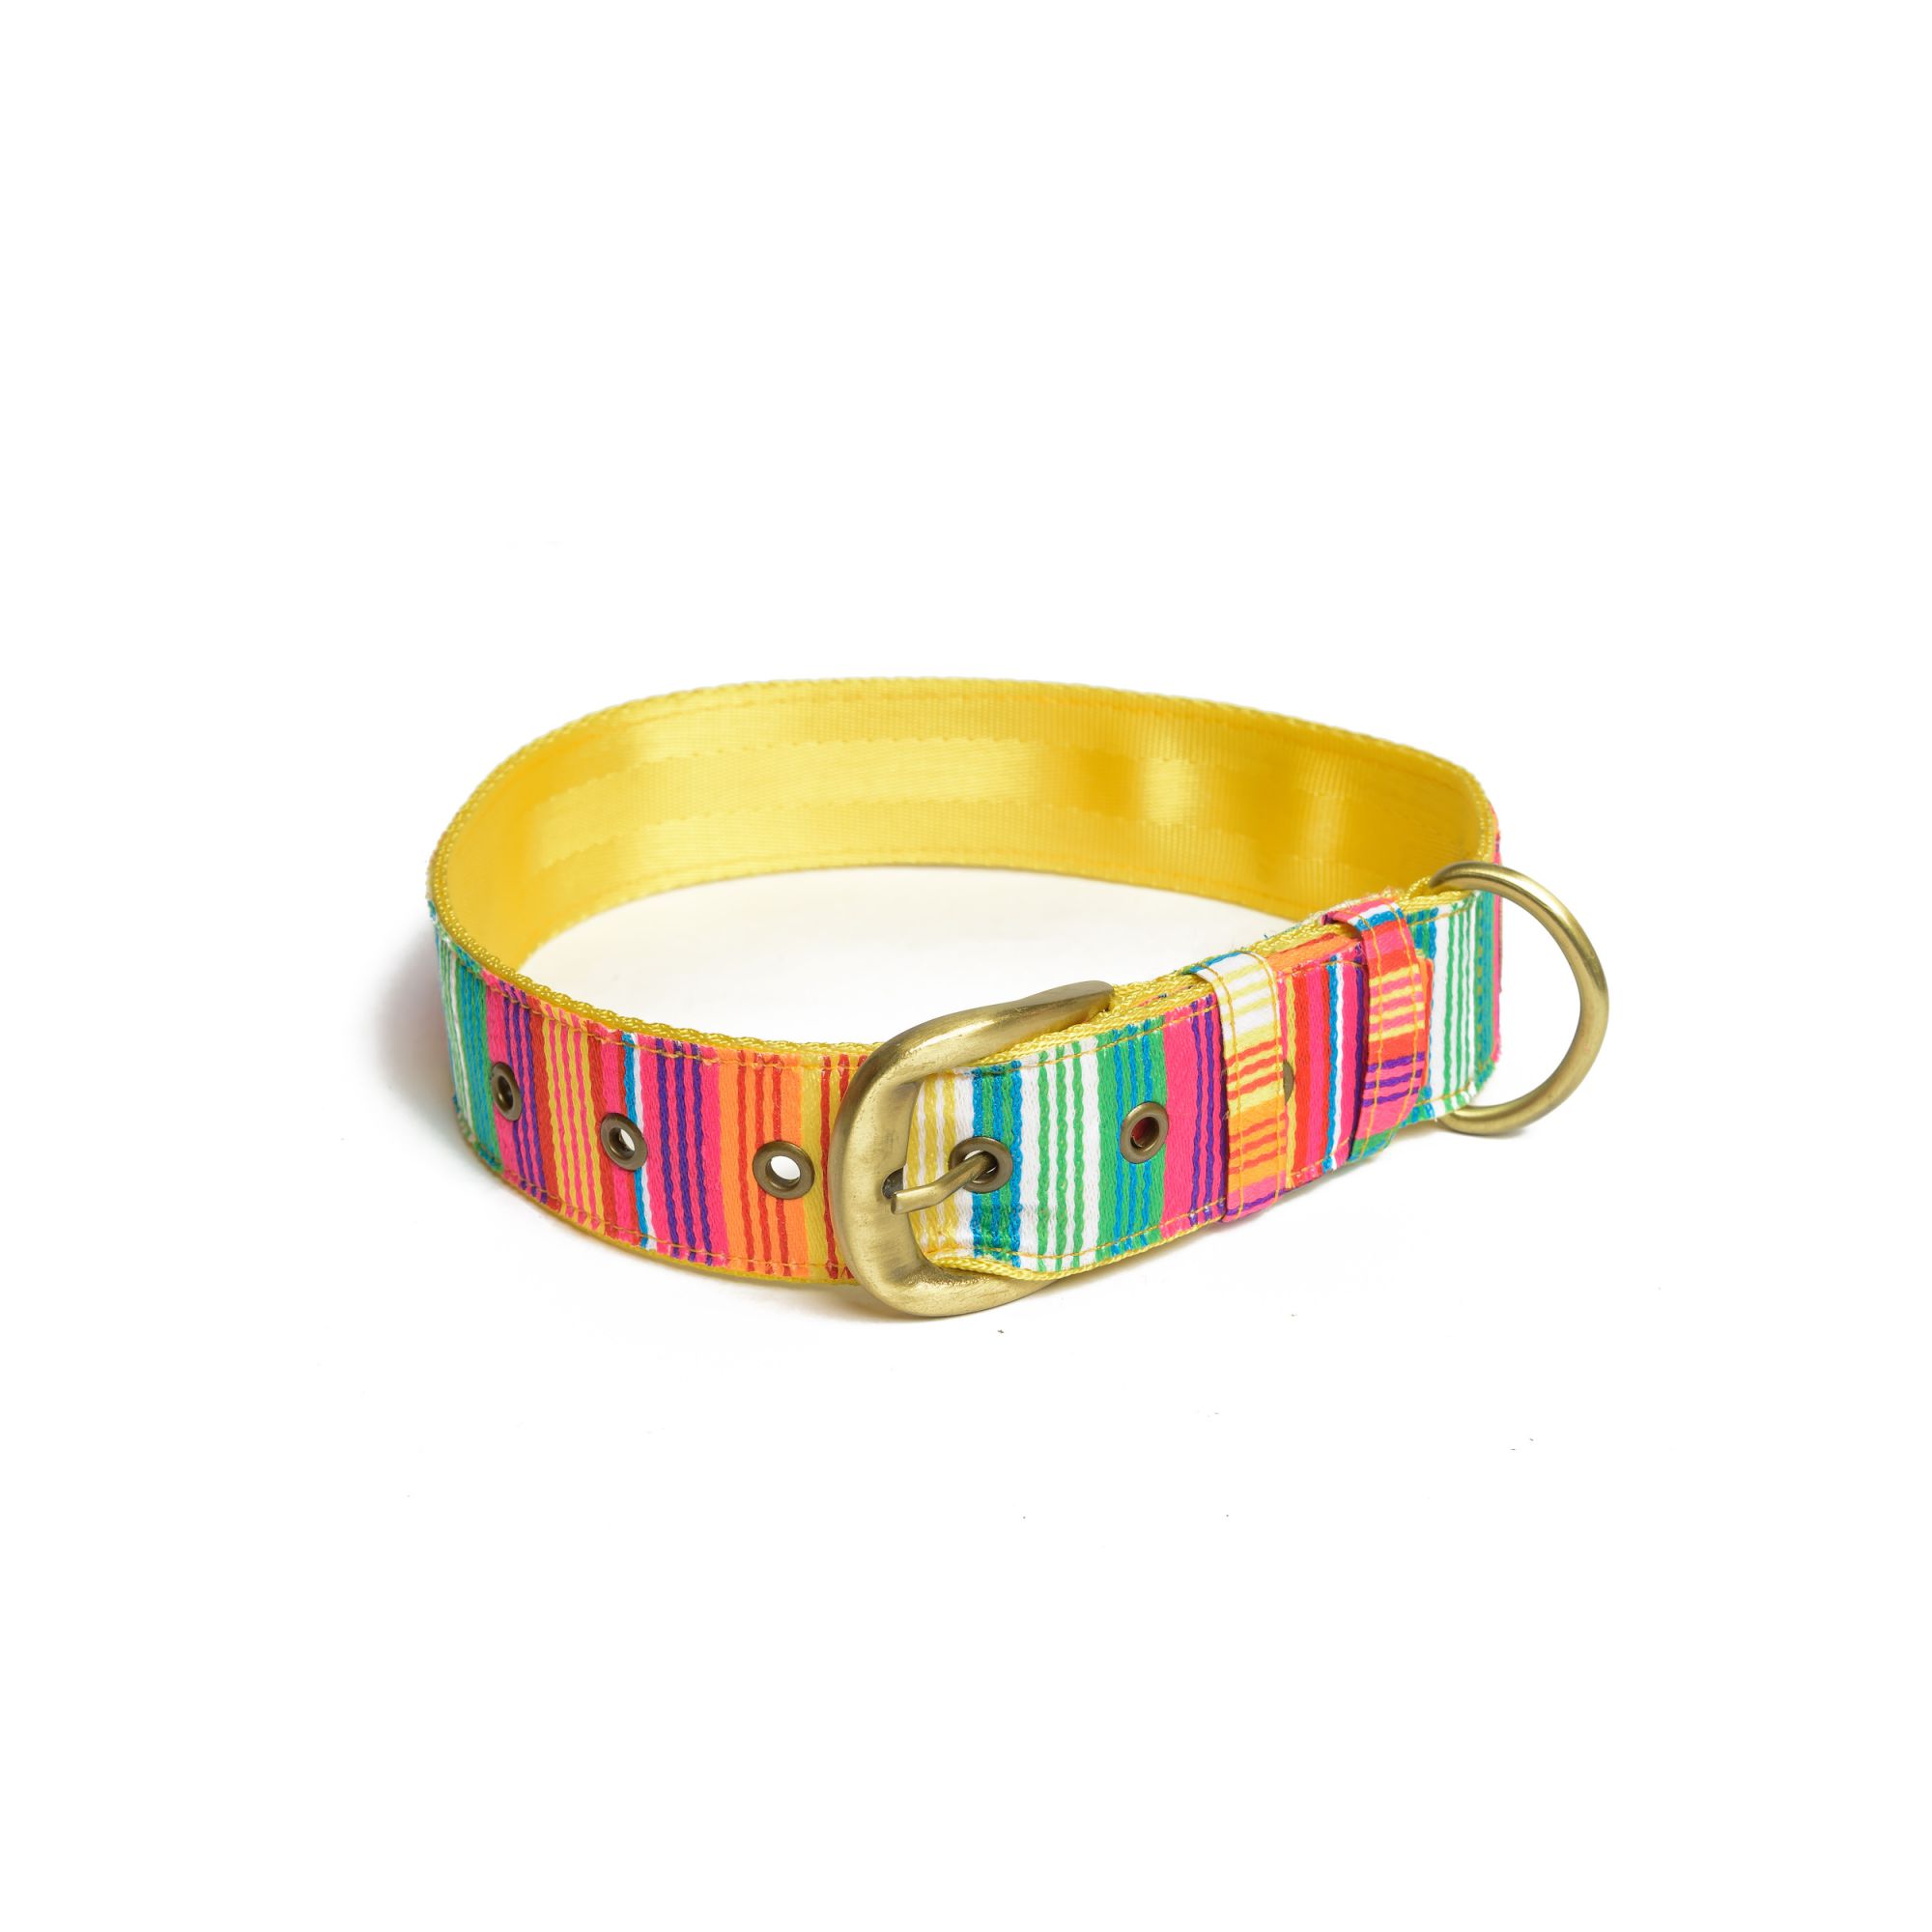 petwale-colourful-stripes-dog-belt-collar